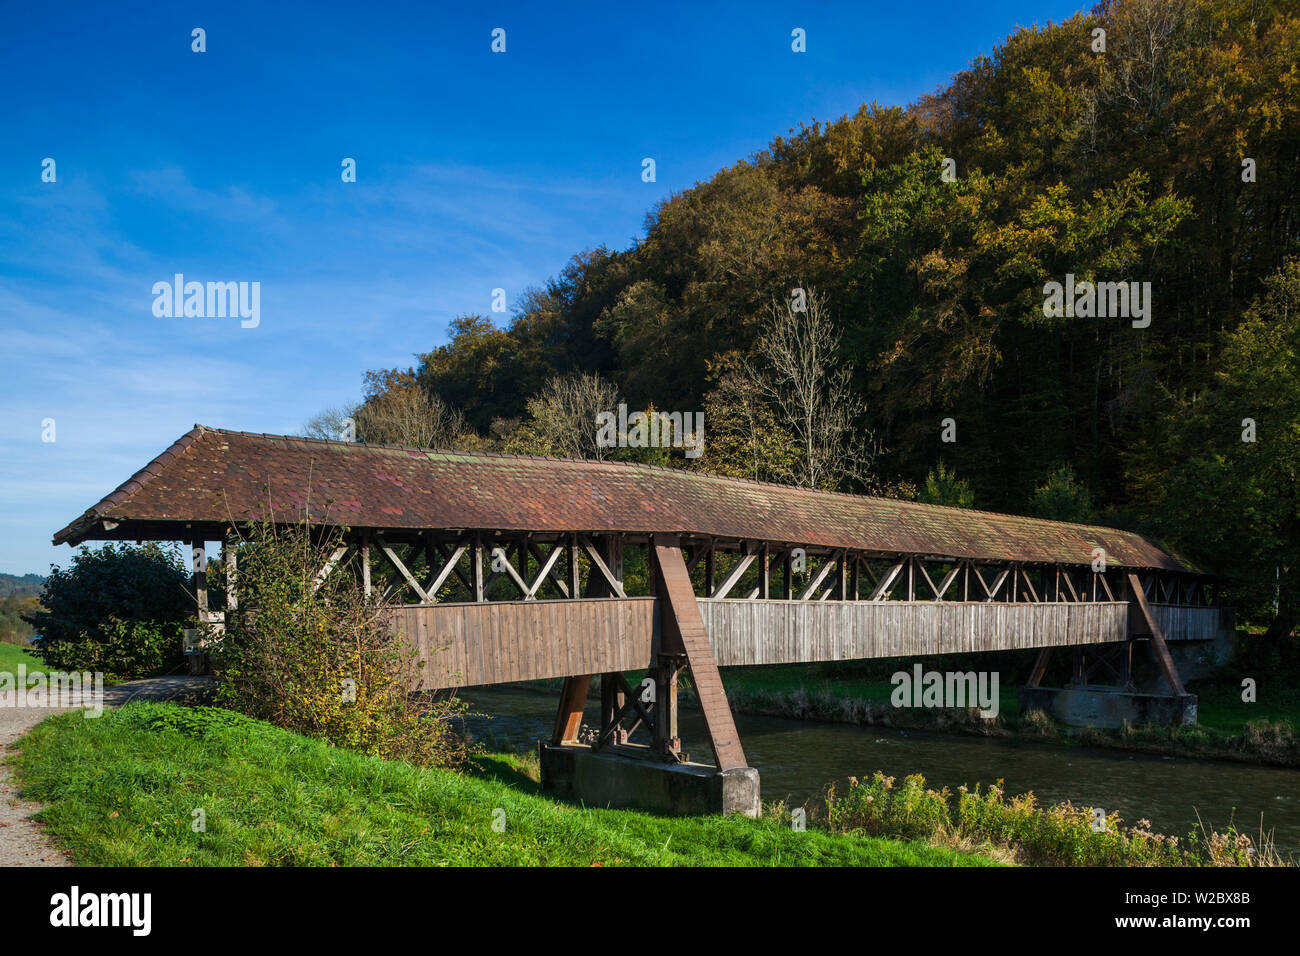 Germany, Baden-Wurttemburg, Black Forest, Waldshut-Tiengen, Tiengen, Wutach River, old wooden covered bridge Stock Photo